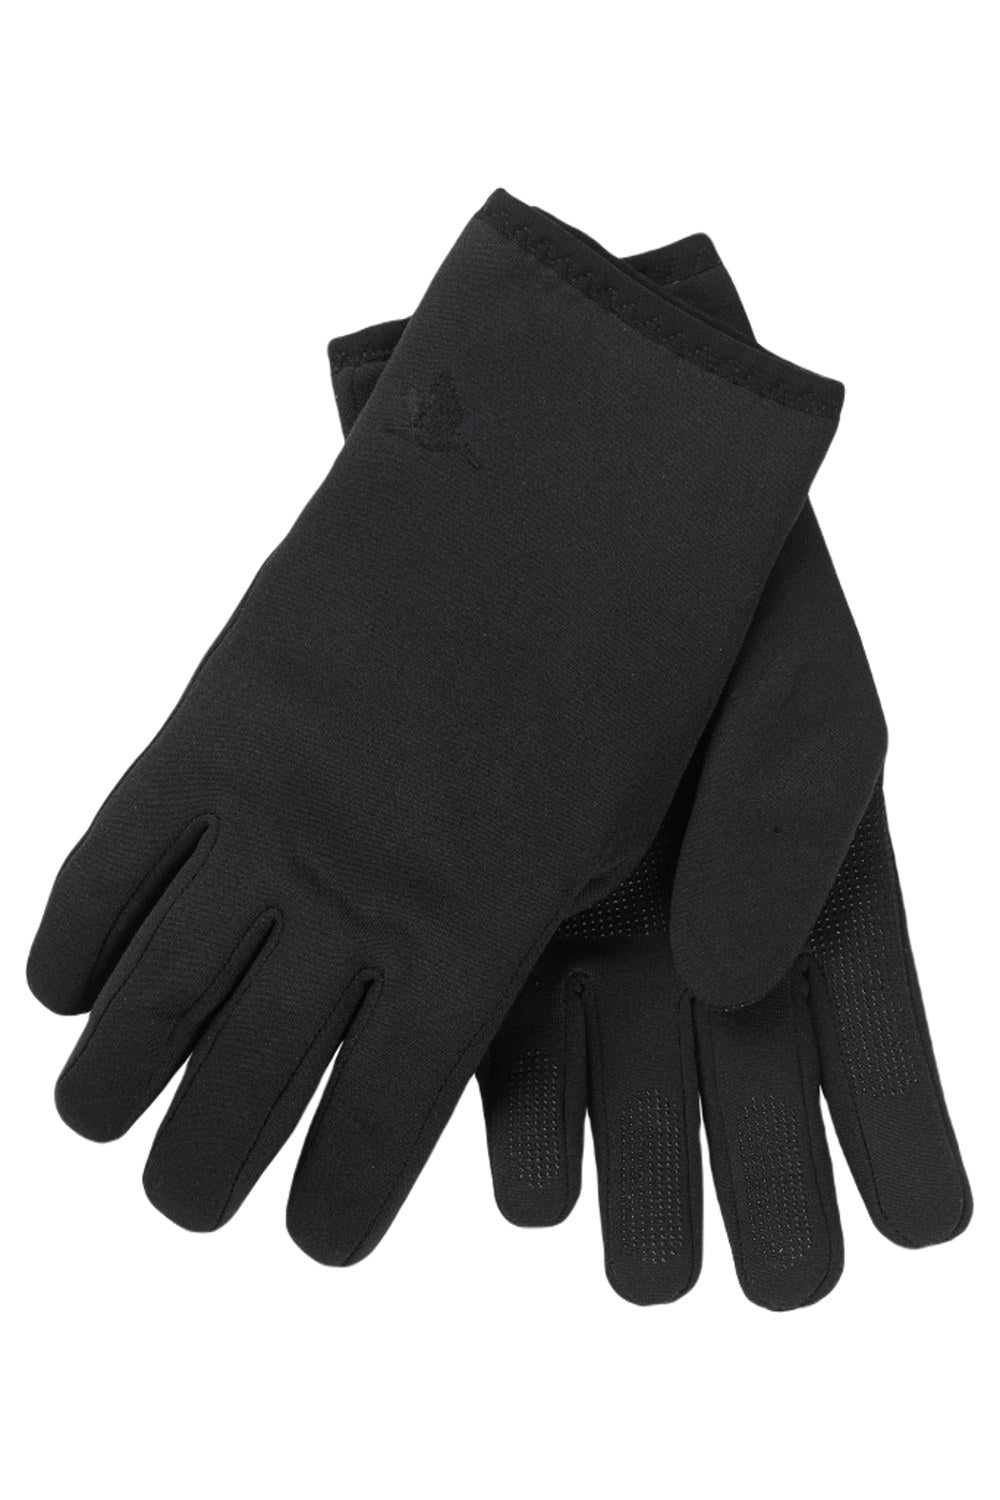 Seeland Hawker Waterproof Gloves in Meteorite